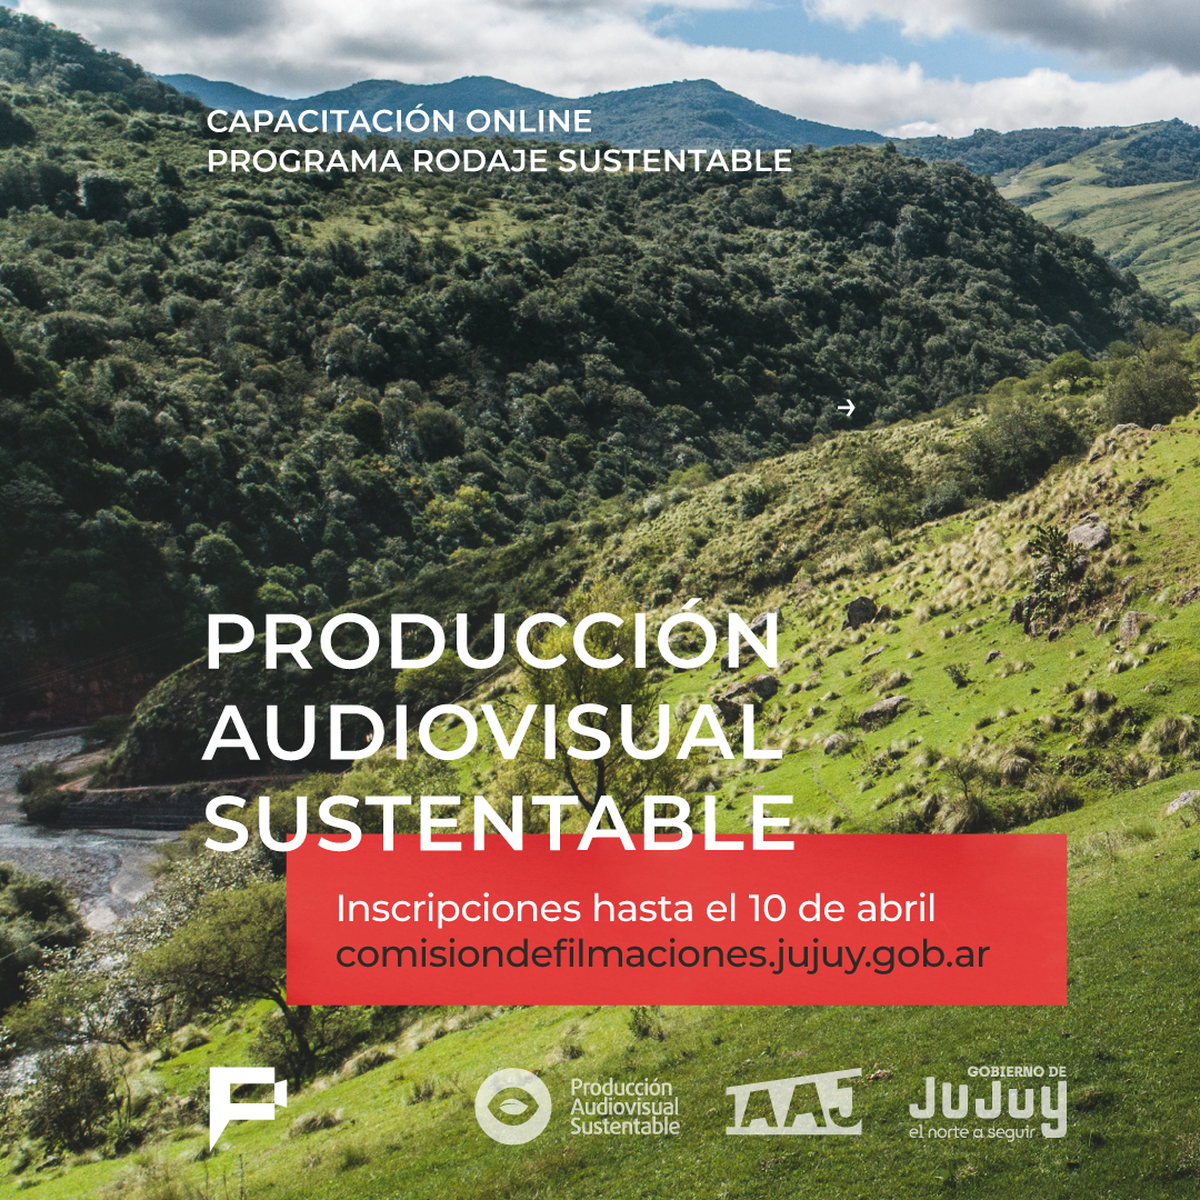 Abren las inscripciones para la capacitación Producción Audiovisual Sustentable